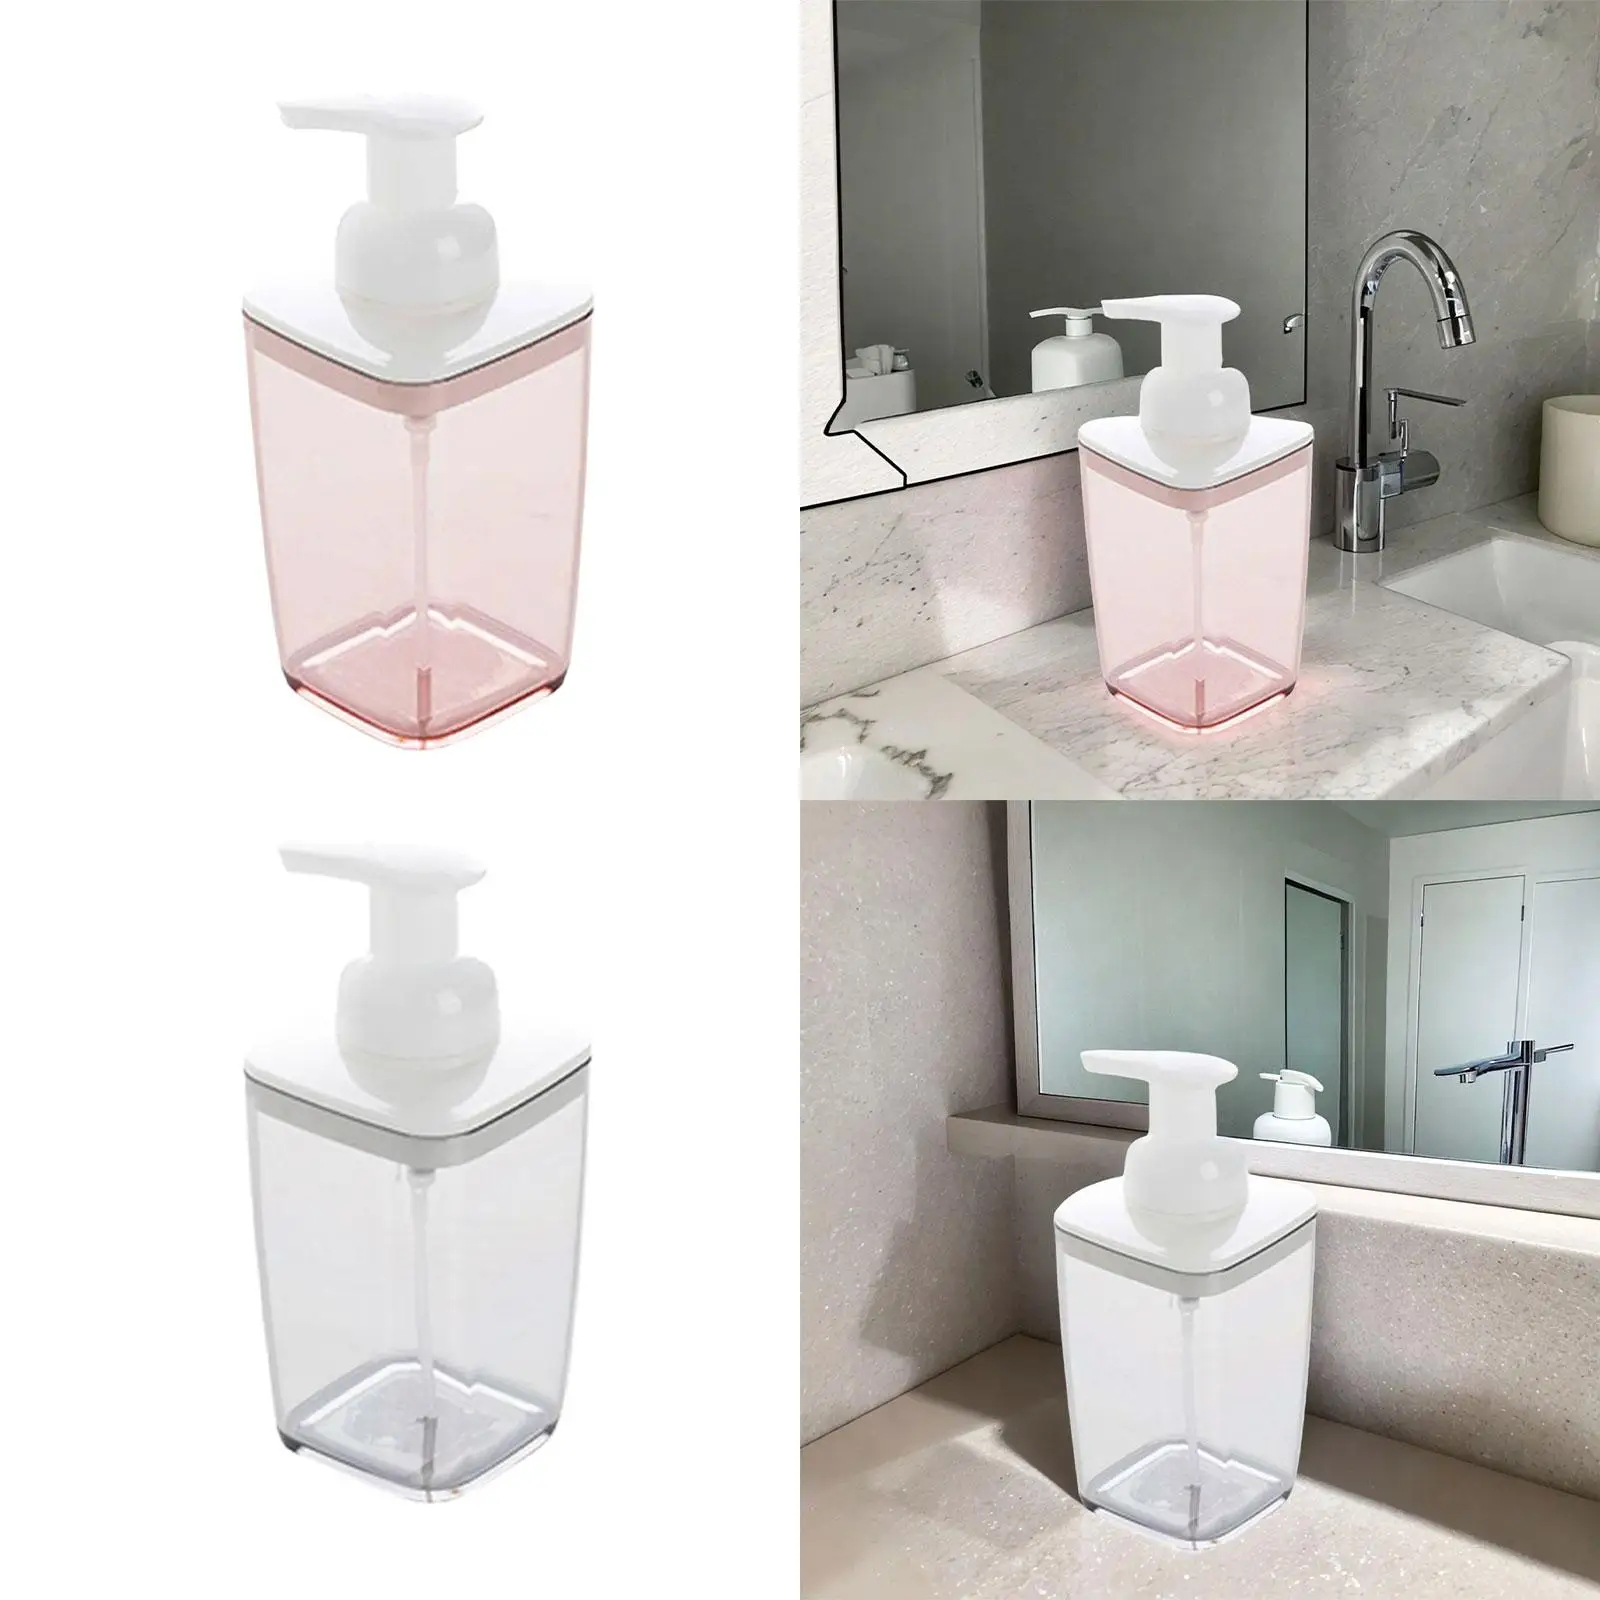 Empty Refillable Pump Bottle Liquid Soap Container Liquid Hand Soap Container for Countertop Shower Room Restroom Vanity